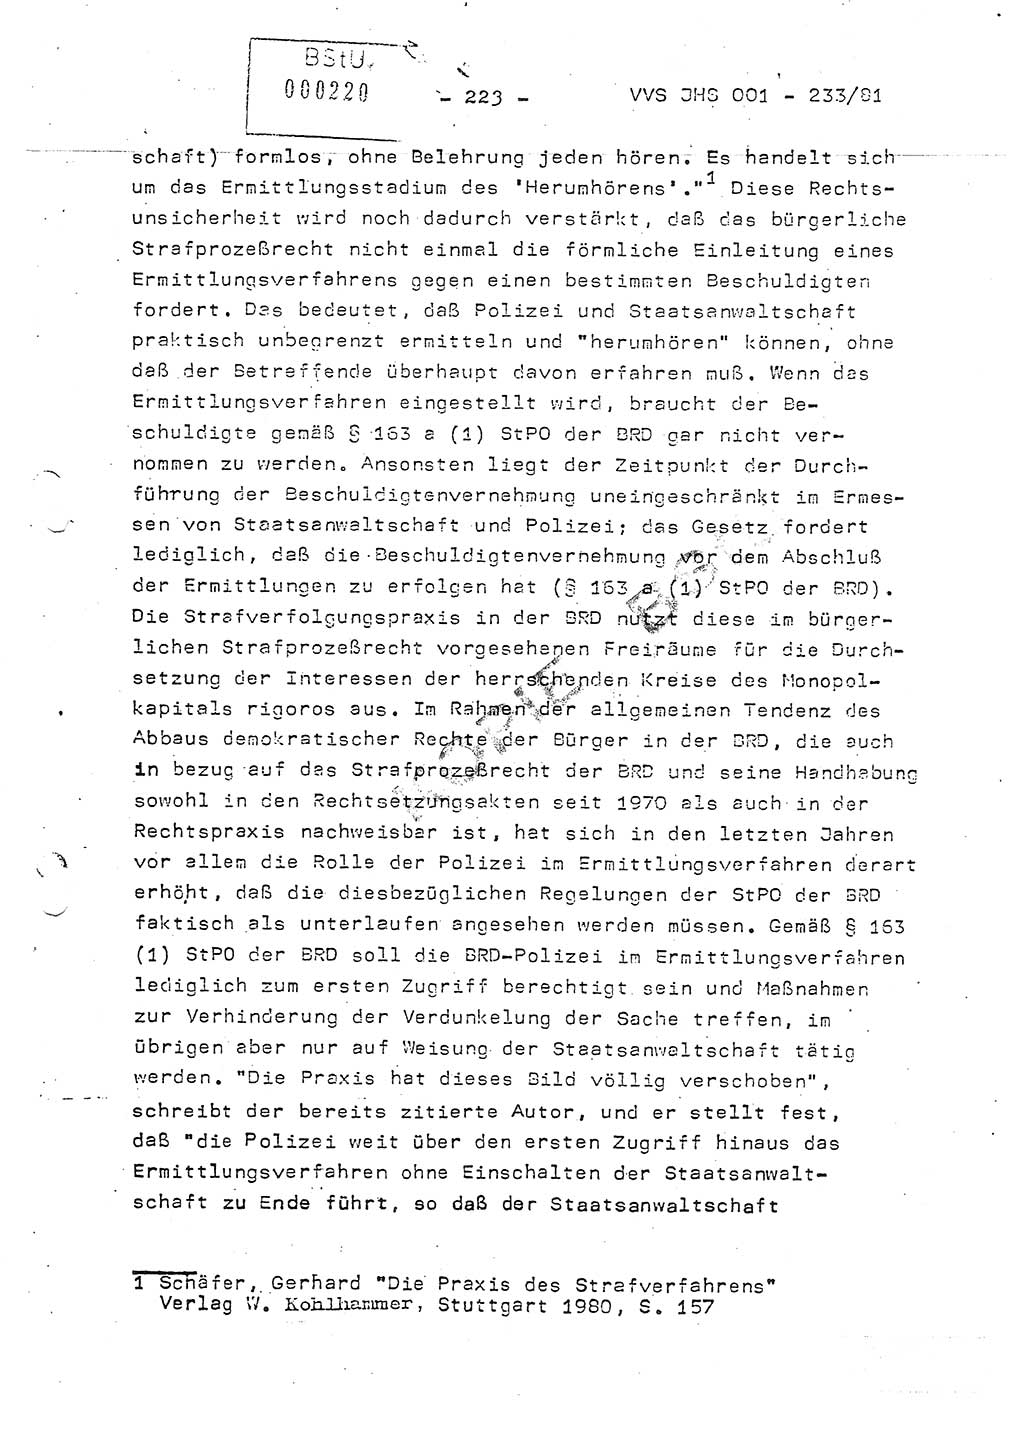 Dissertation Oberstleutnant Horst Zank (JHS), Oberstleutnant Dr. Karl-Heinz Knoblauch (JHS), Oberstleutnant Gustav-Adolf Kowalewski (HA Ⅸ), Oberstleutnant Wolfgang Plötner (HA Ⅸ), Ministerium für Staatssicherheit (MfS) [Deutsche Demokratische Republik (DDR)], Juristische Hochschule (JHS), Vertrauliche Verschlußsache (VVS) o001-233/81, Potsdam 1981, Blatt 223 (Diss. MfS DDR JHS VVS o001-233/81 1981, Bl. 223)